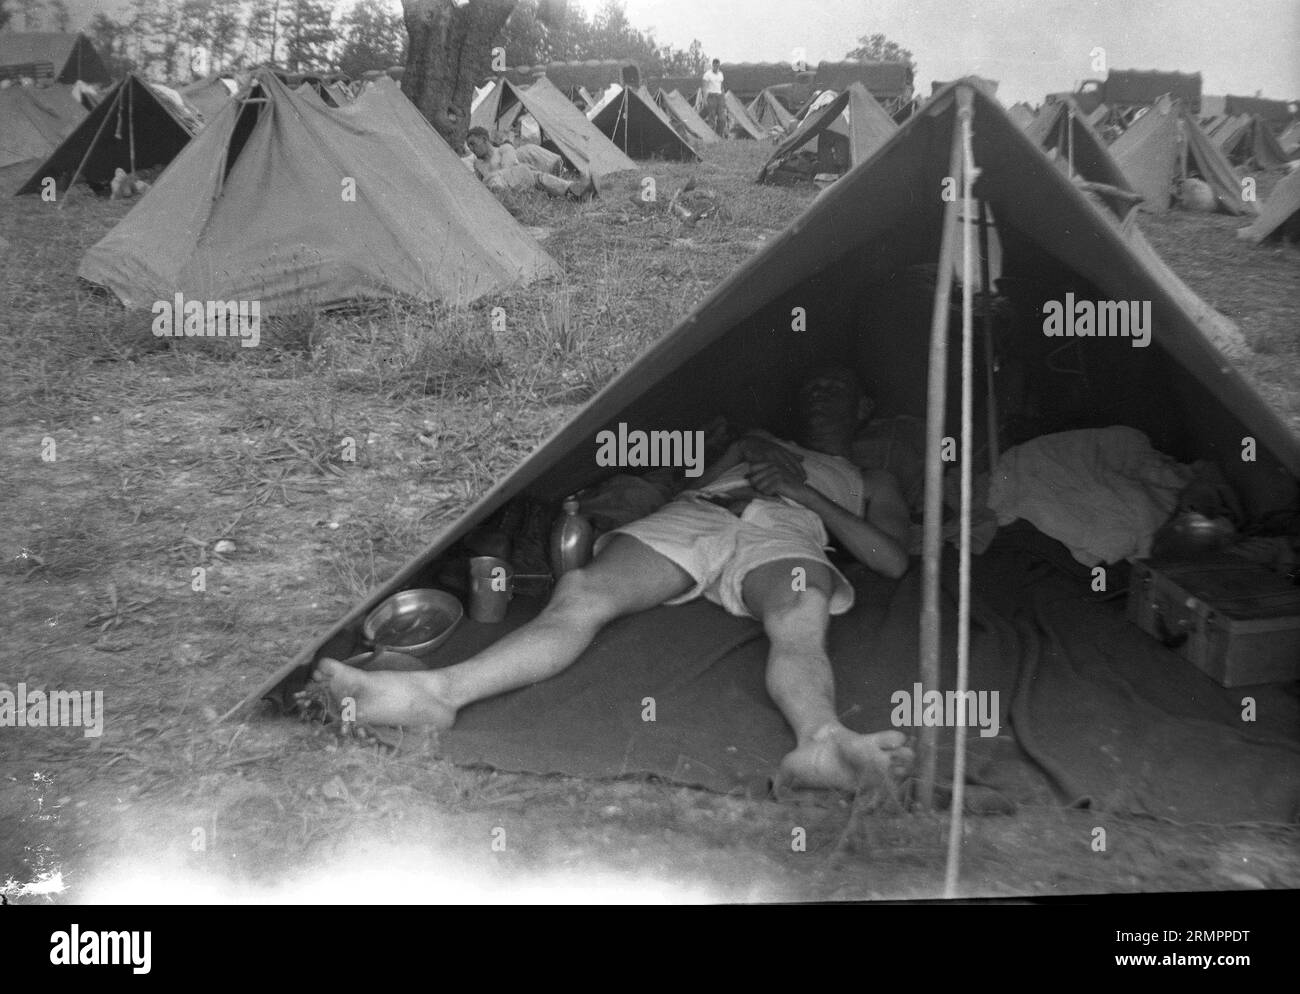 Soldat dormant dans une tente militaire au camp de tentes. Les membres de la 114e division d’infanterie de l’armée des États-Unis s’entraînent pour combattre l’Allemagne en Europe pendant la Seconde Guerre mondiale. Banque D'Images